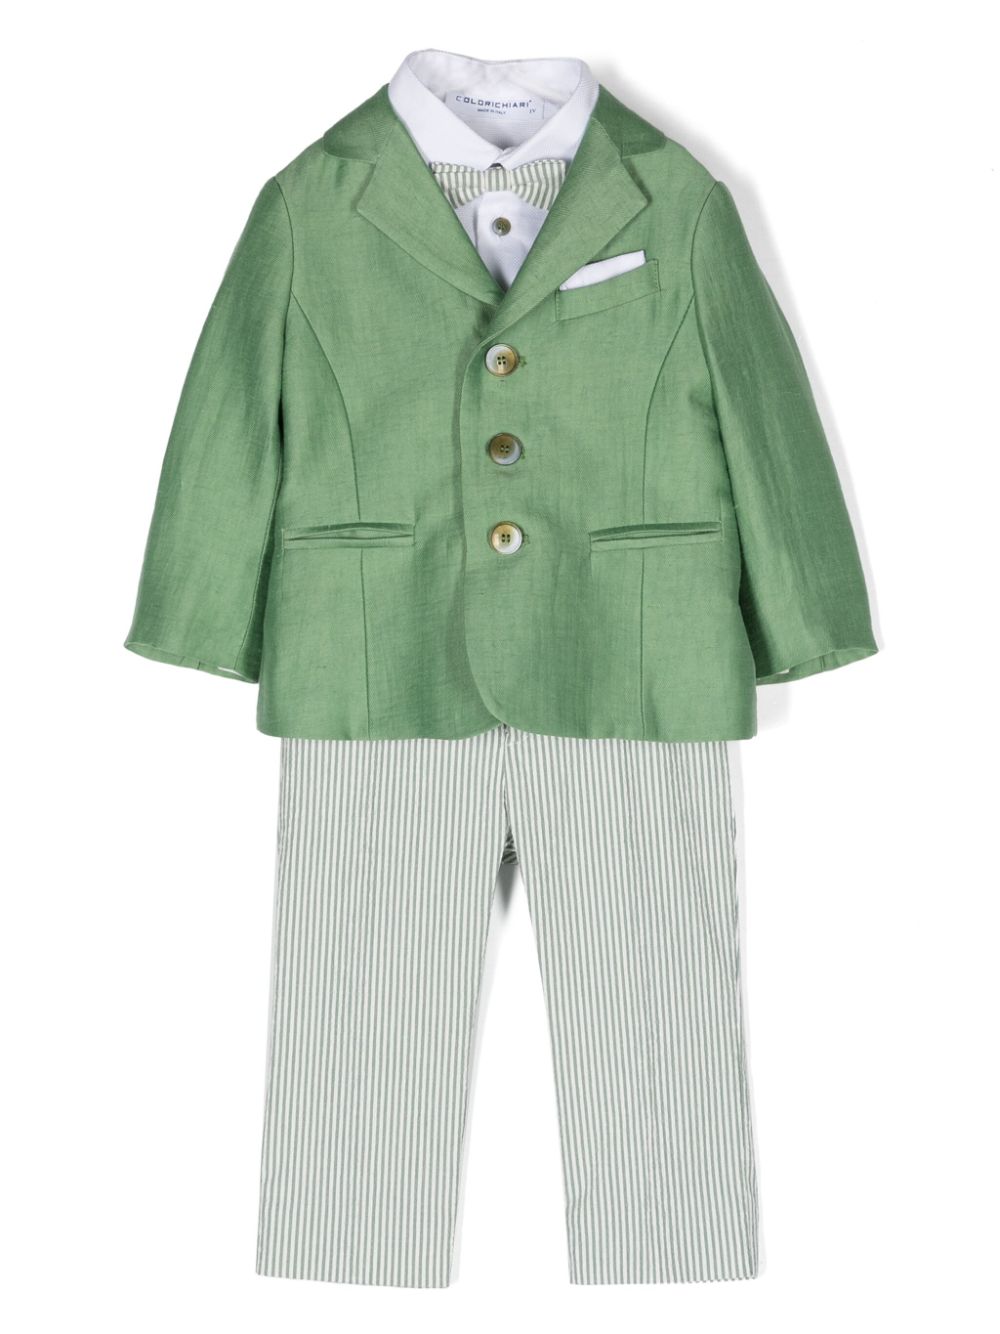 Completo elegante verde e bianco per neonato